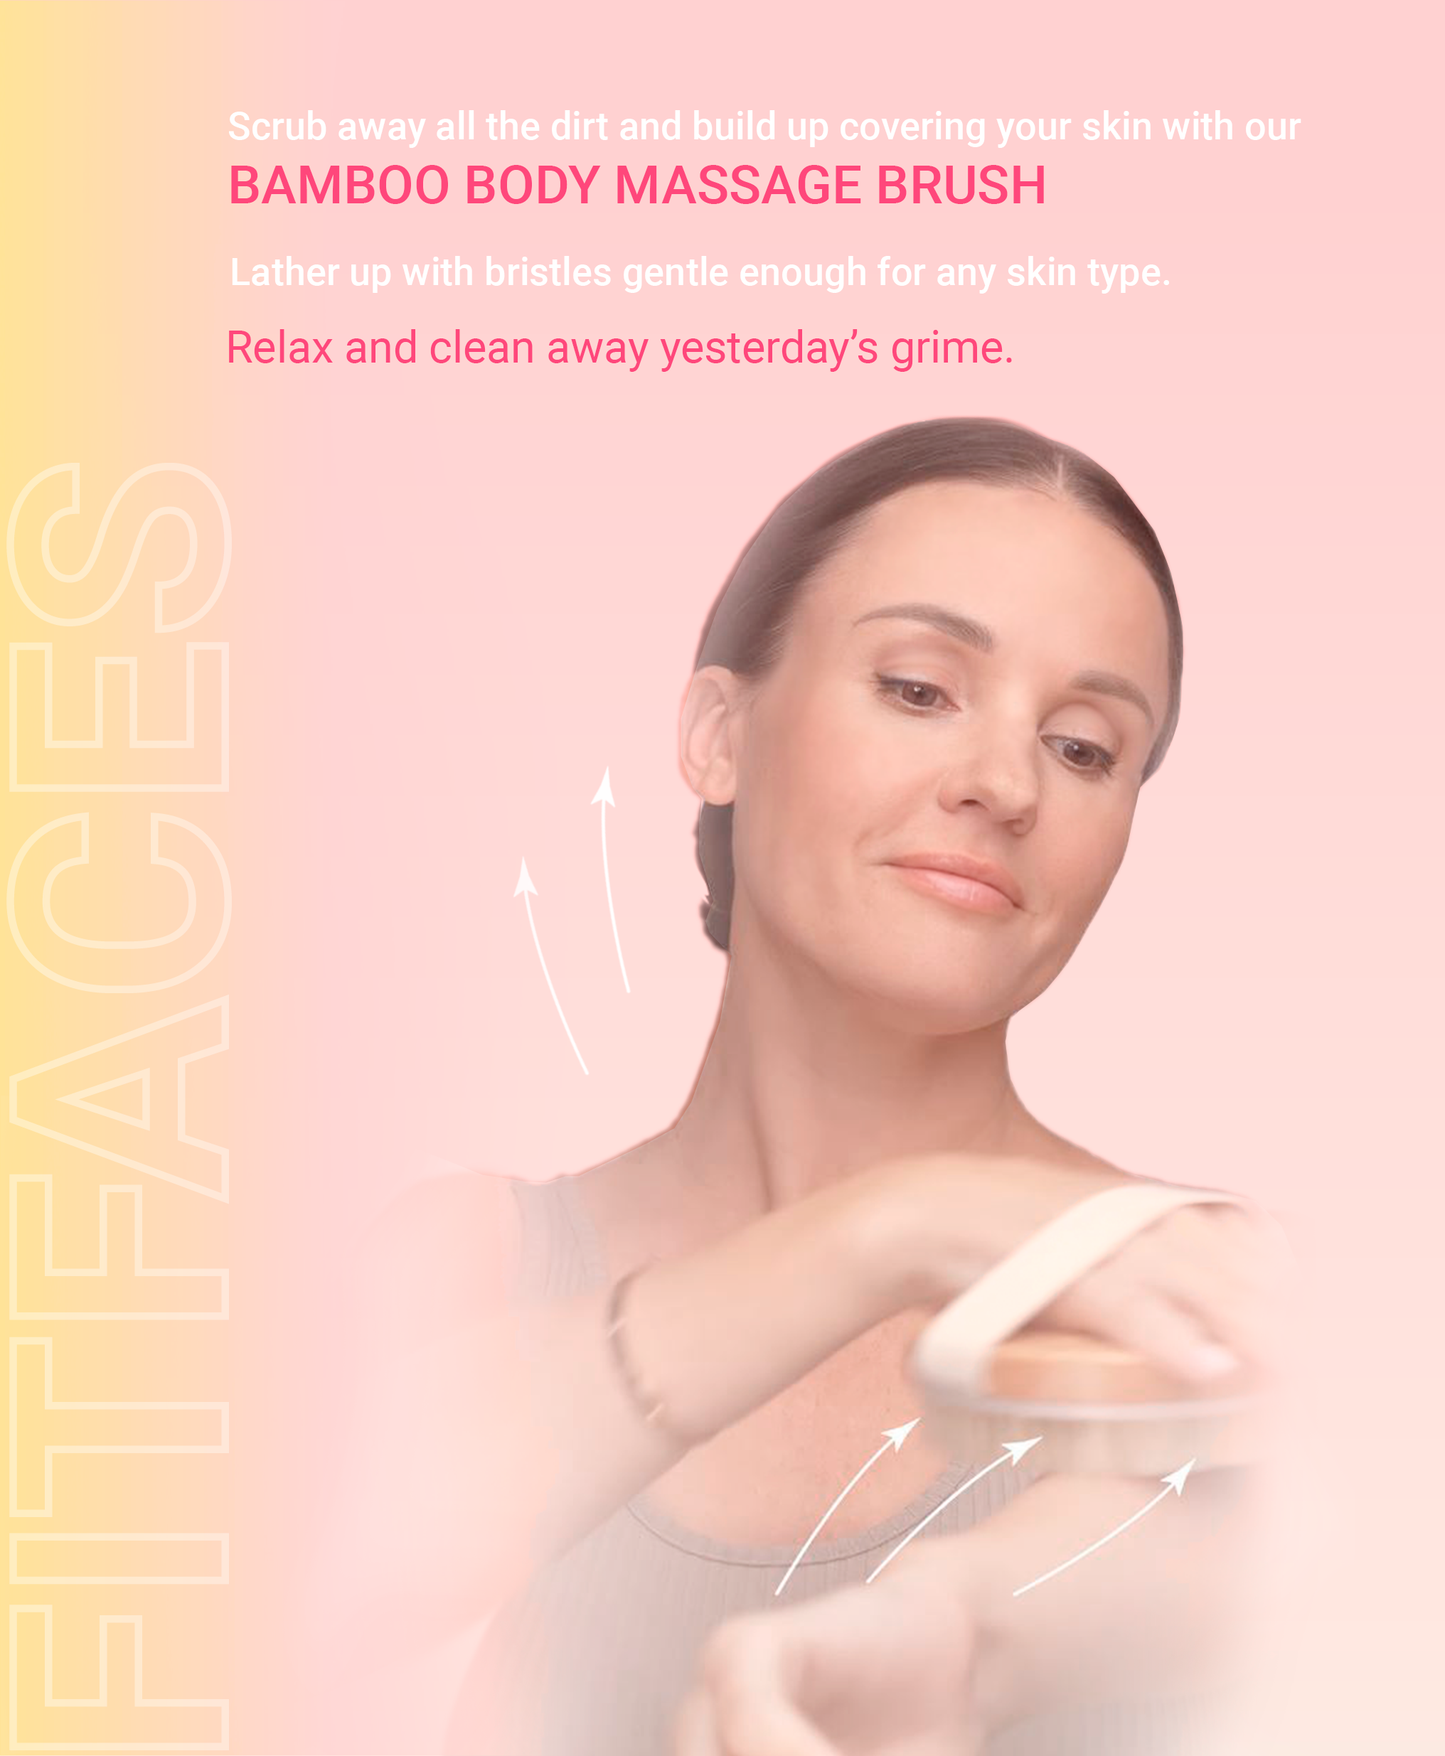 BAMBOO BODY MASSAGE BRUSH